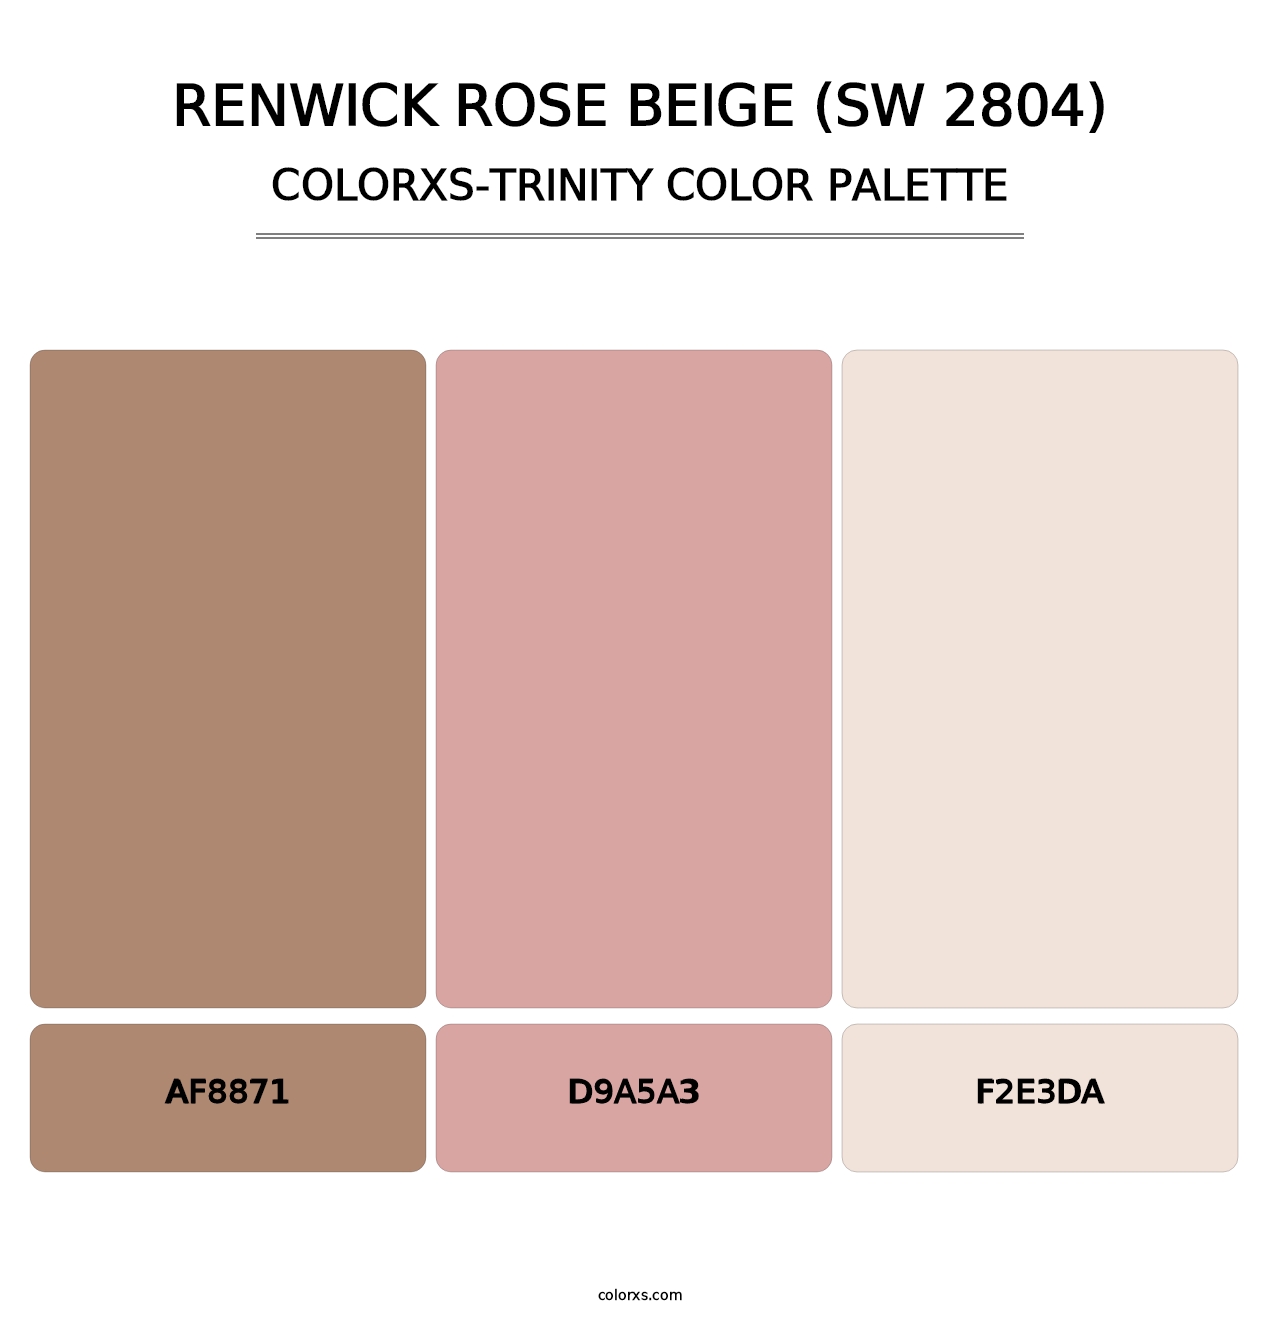 Renwick Rose Beige (SW 2804) - Colorxs Trinity Palette